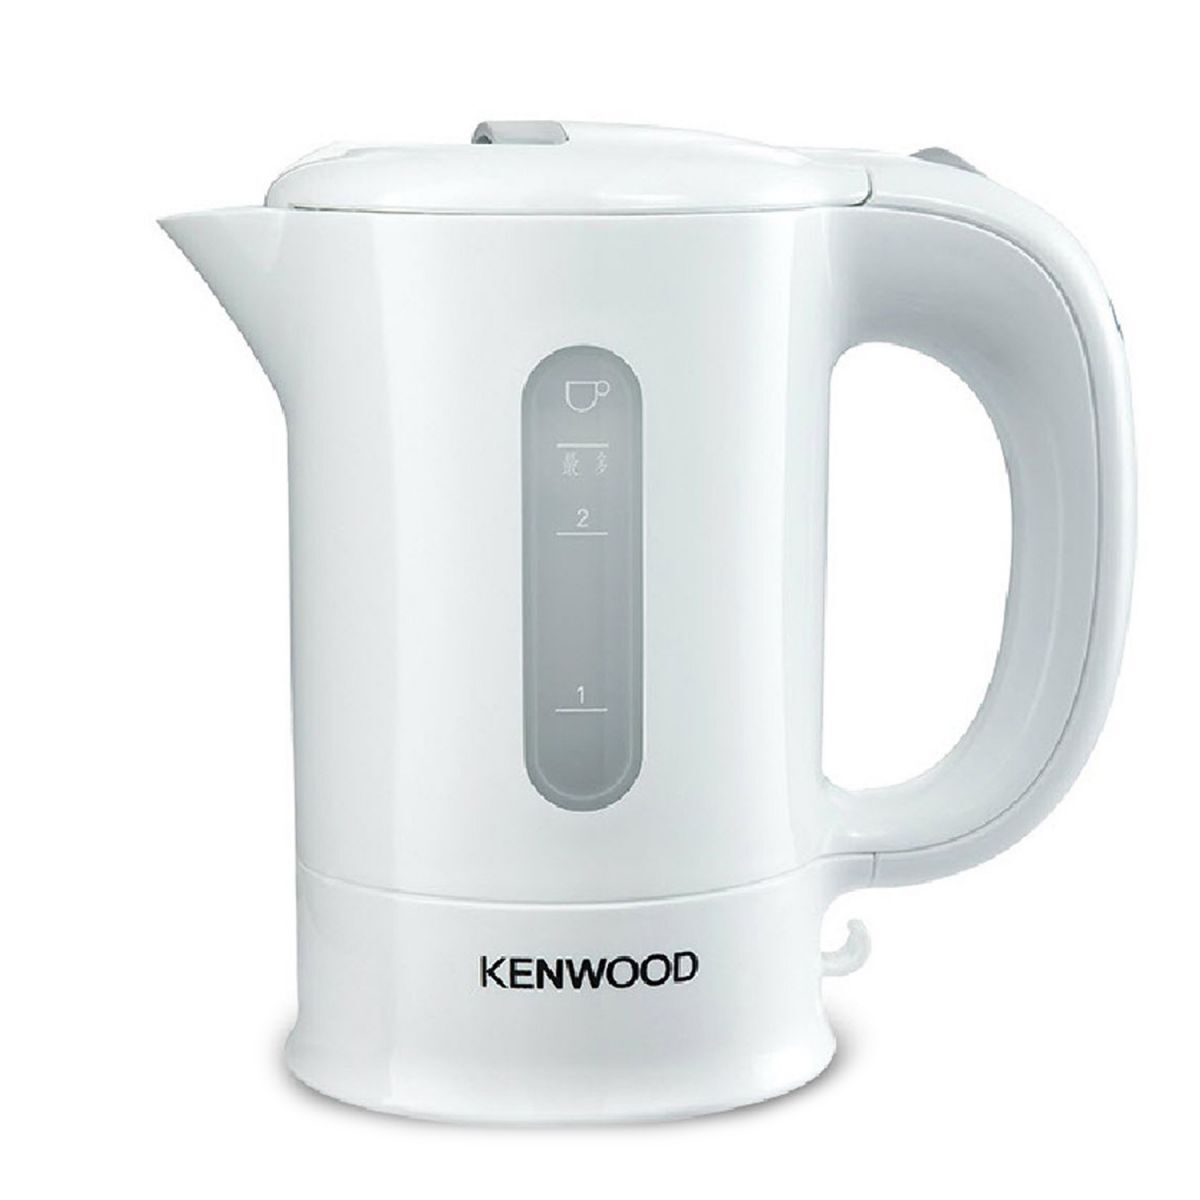 Bình - Ấm siêu tốc Kenwood JKP250 - 0.5 lít, 650W